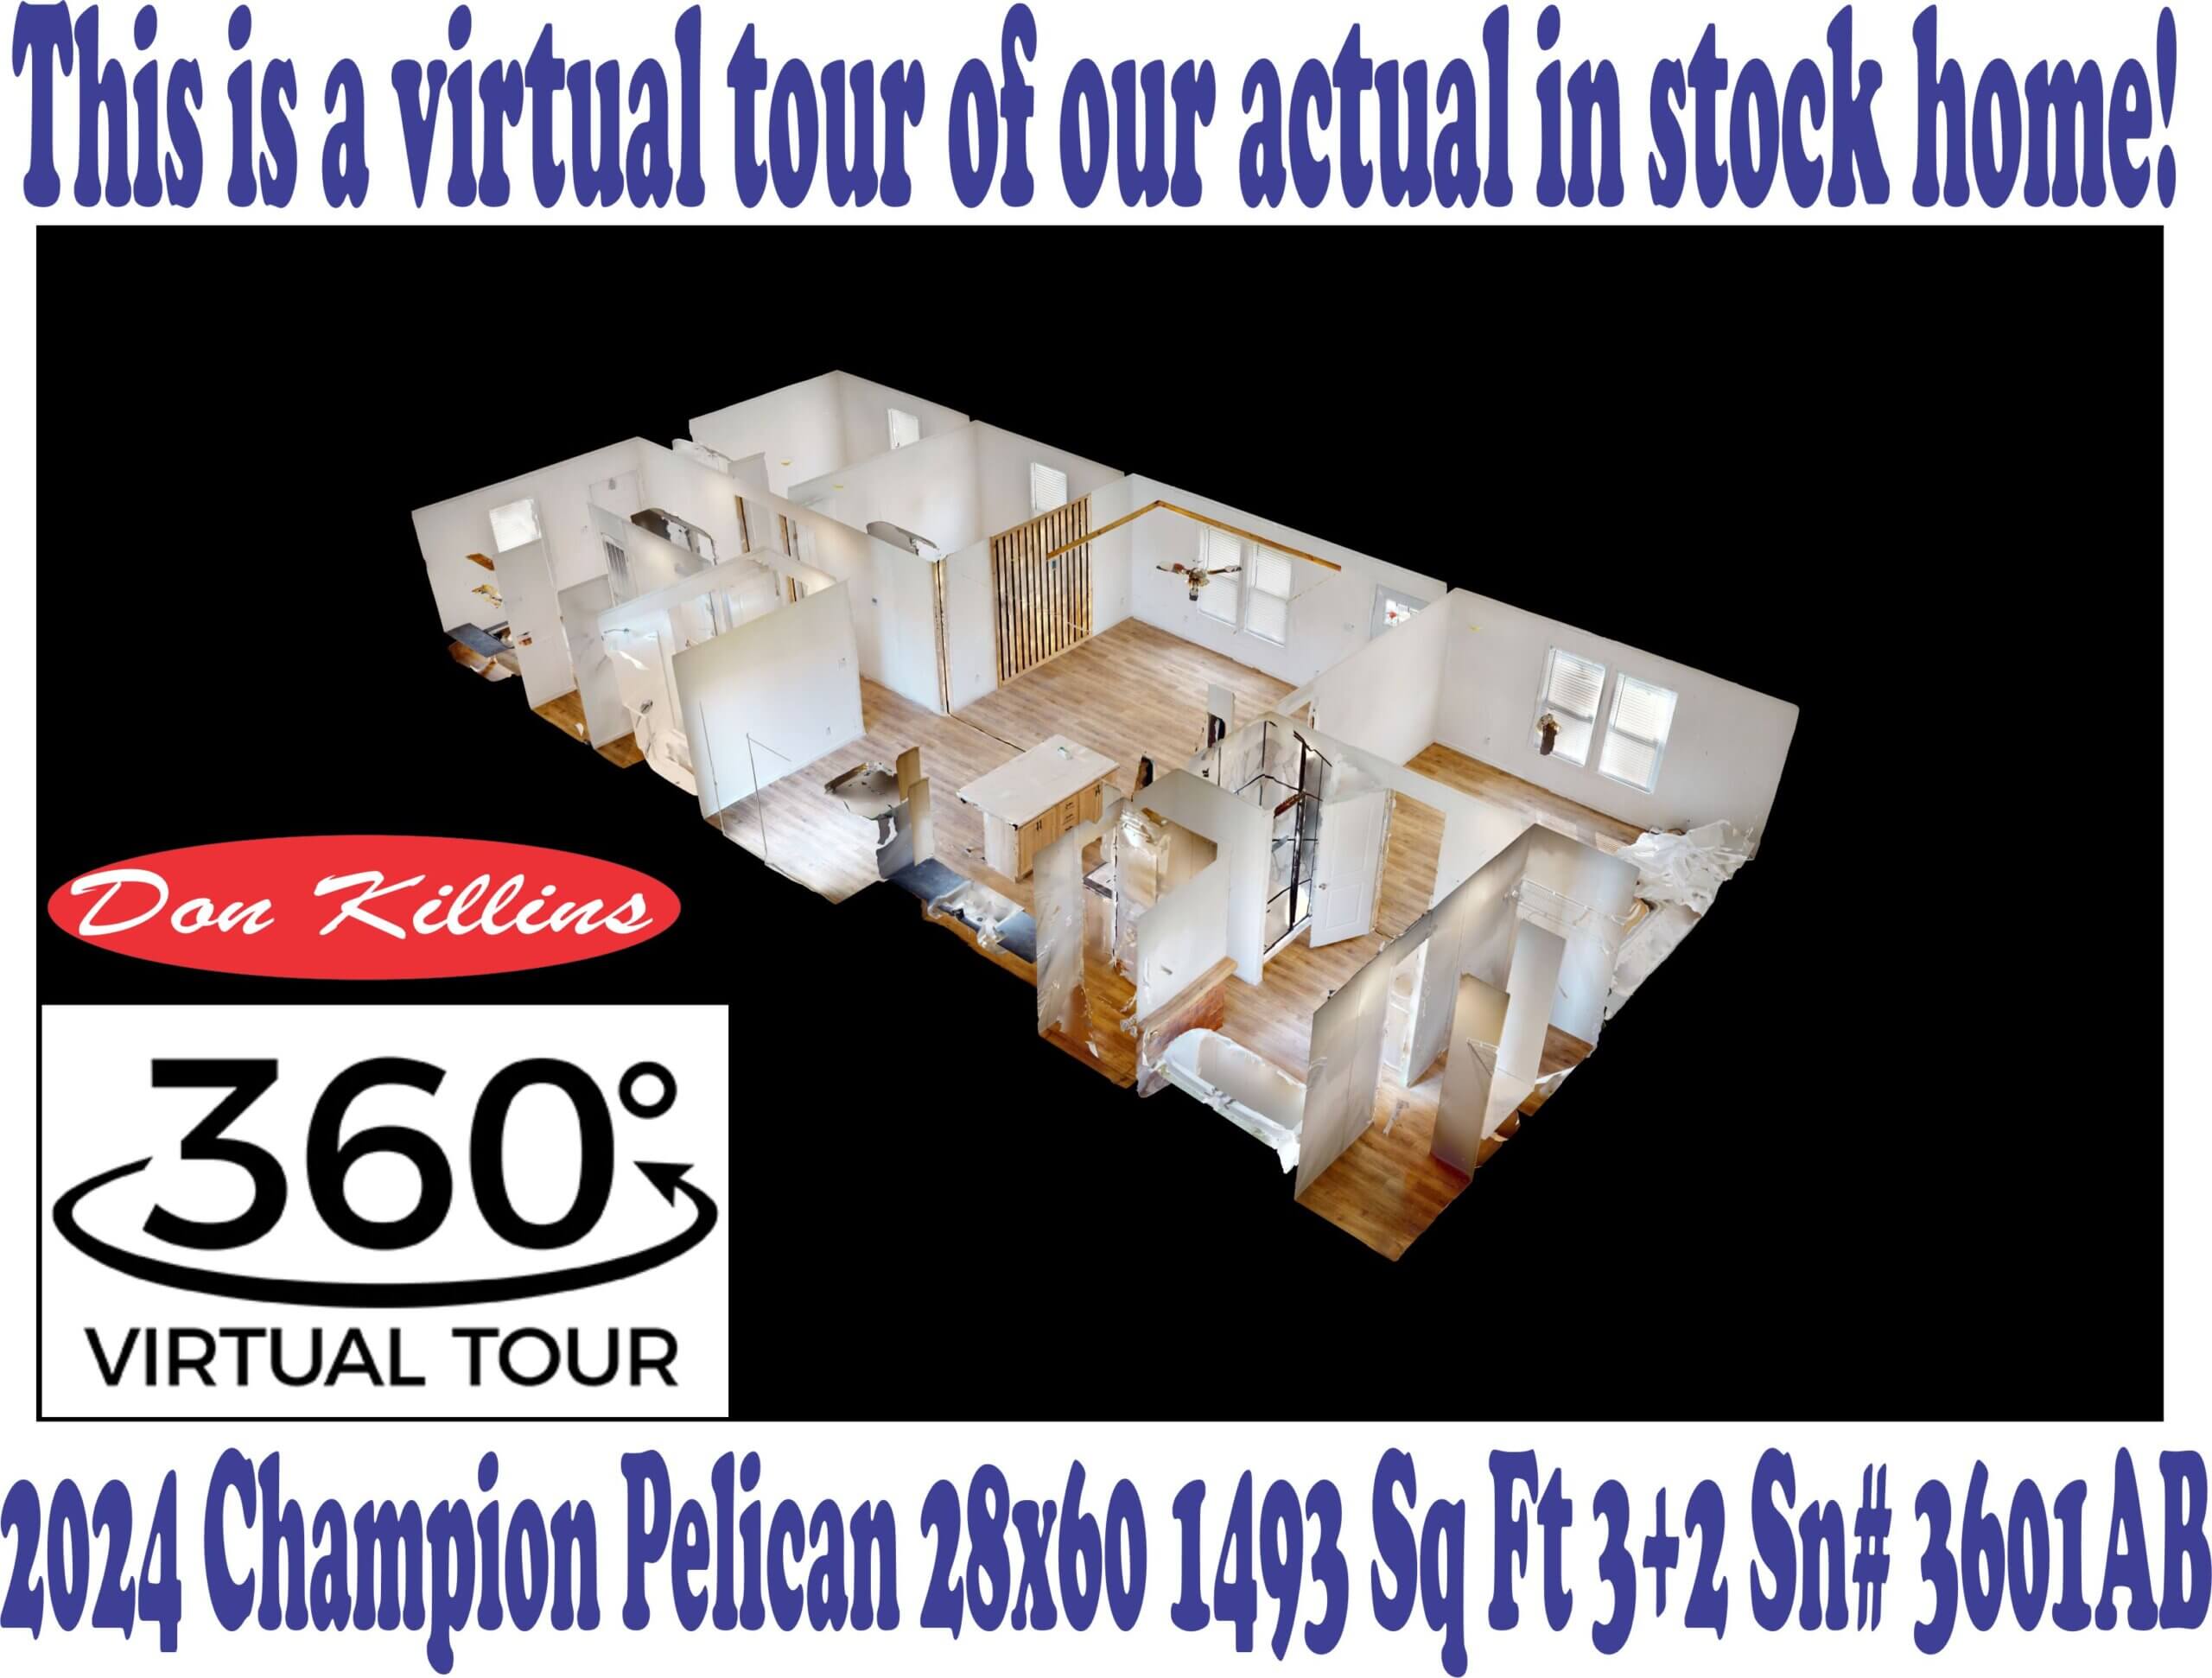 Dollhouse Virtual Tour Sn#3601AB